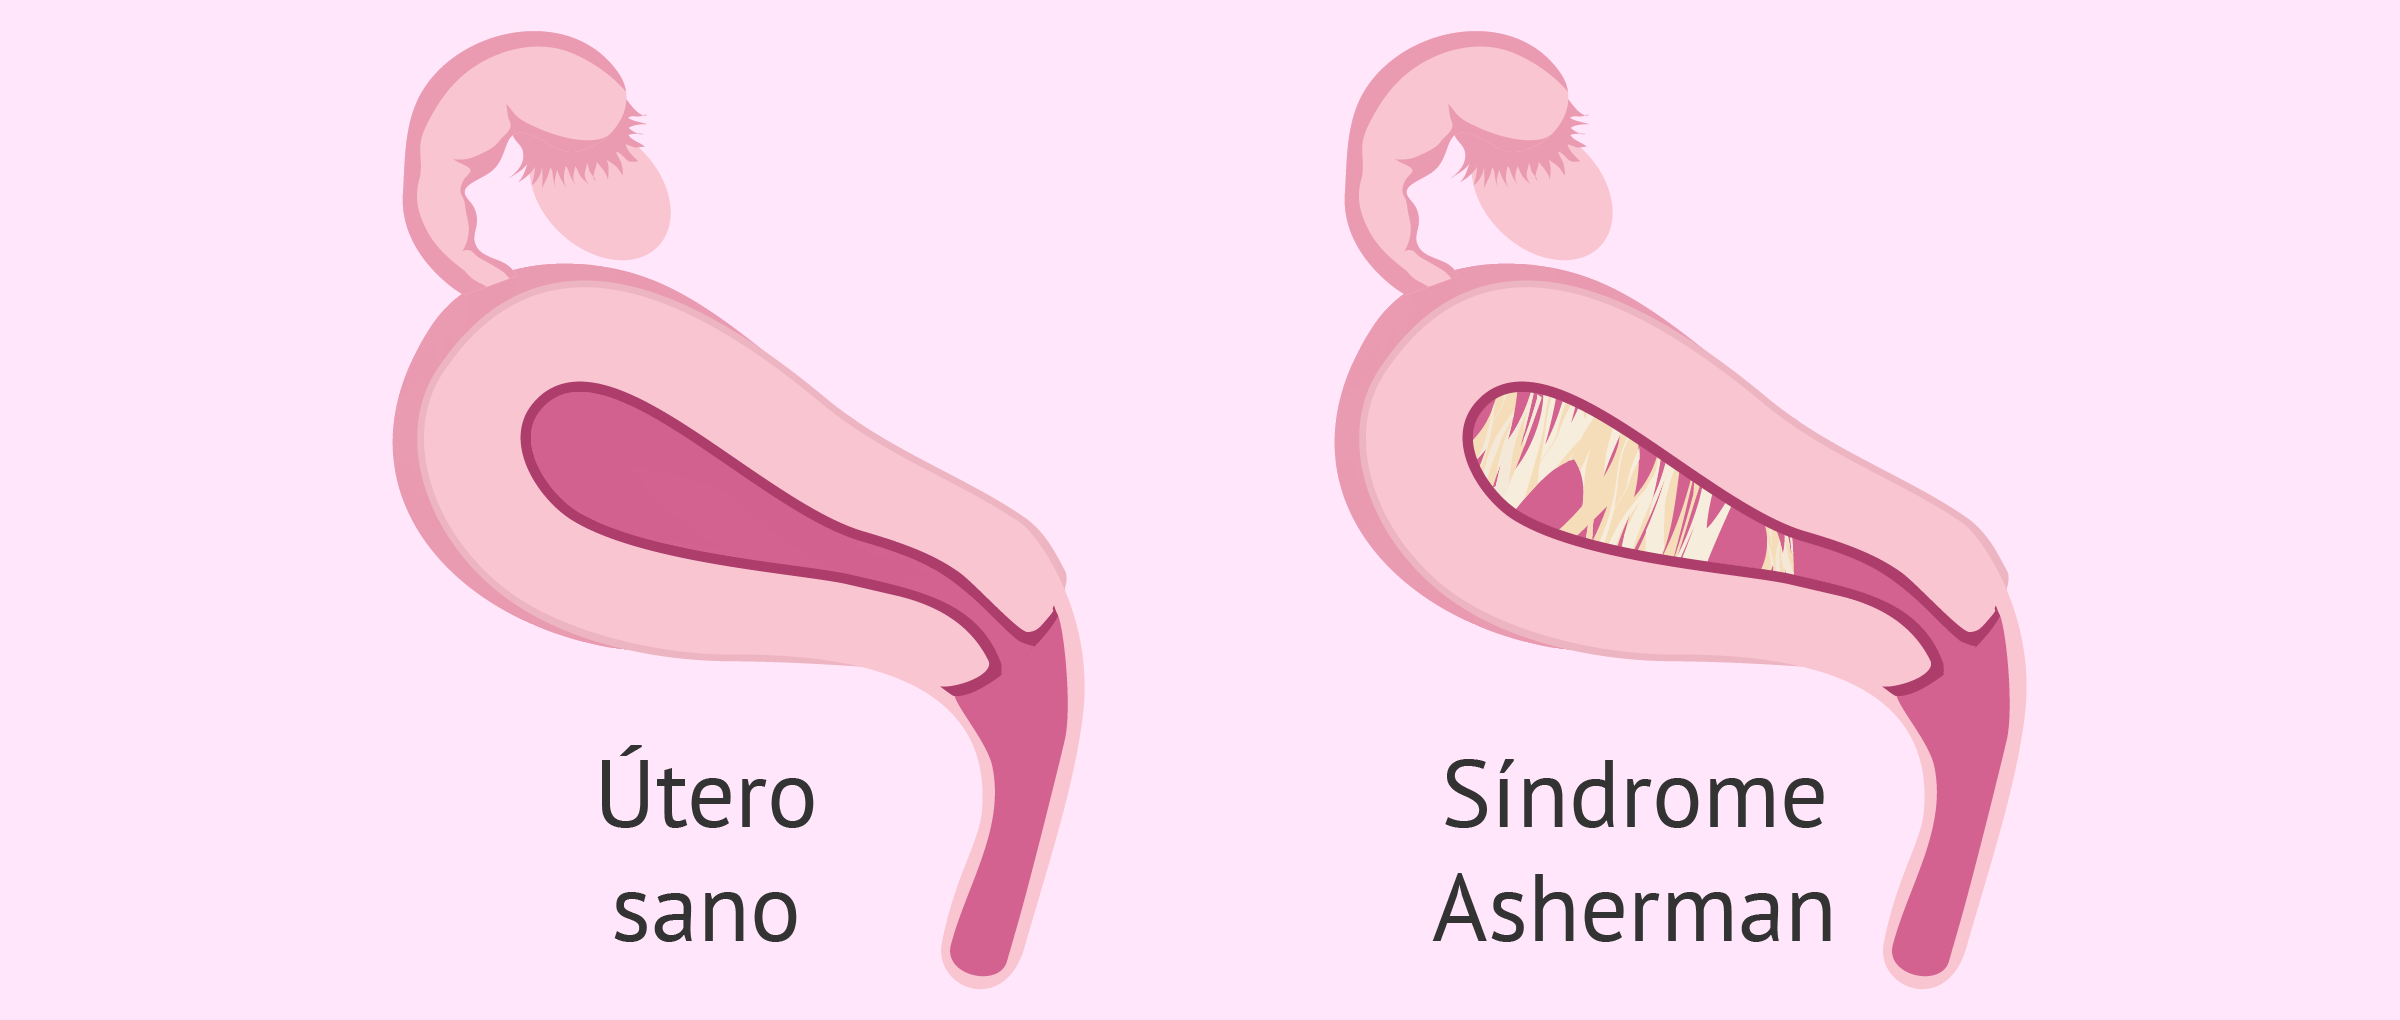 Útero sano vs. útero con adherencias uterinas